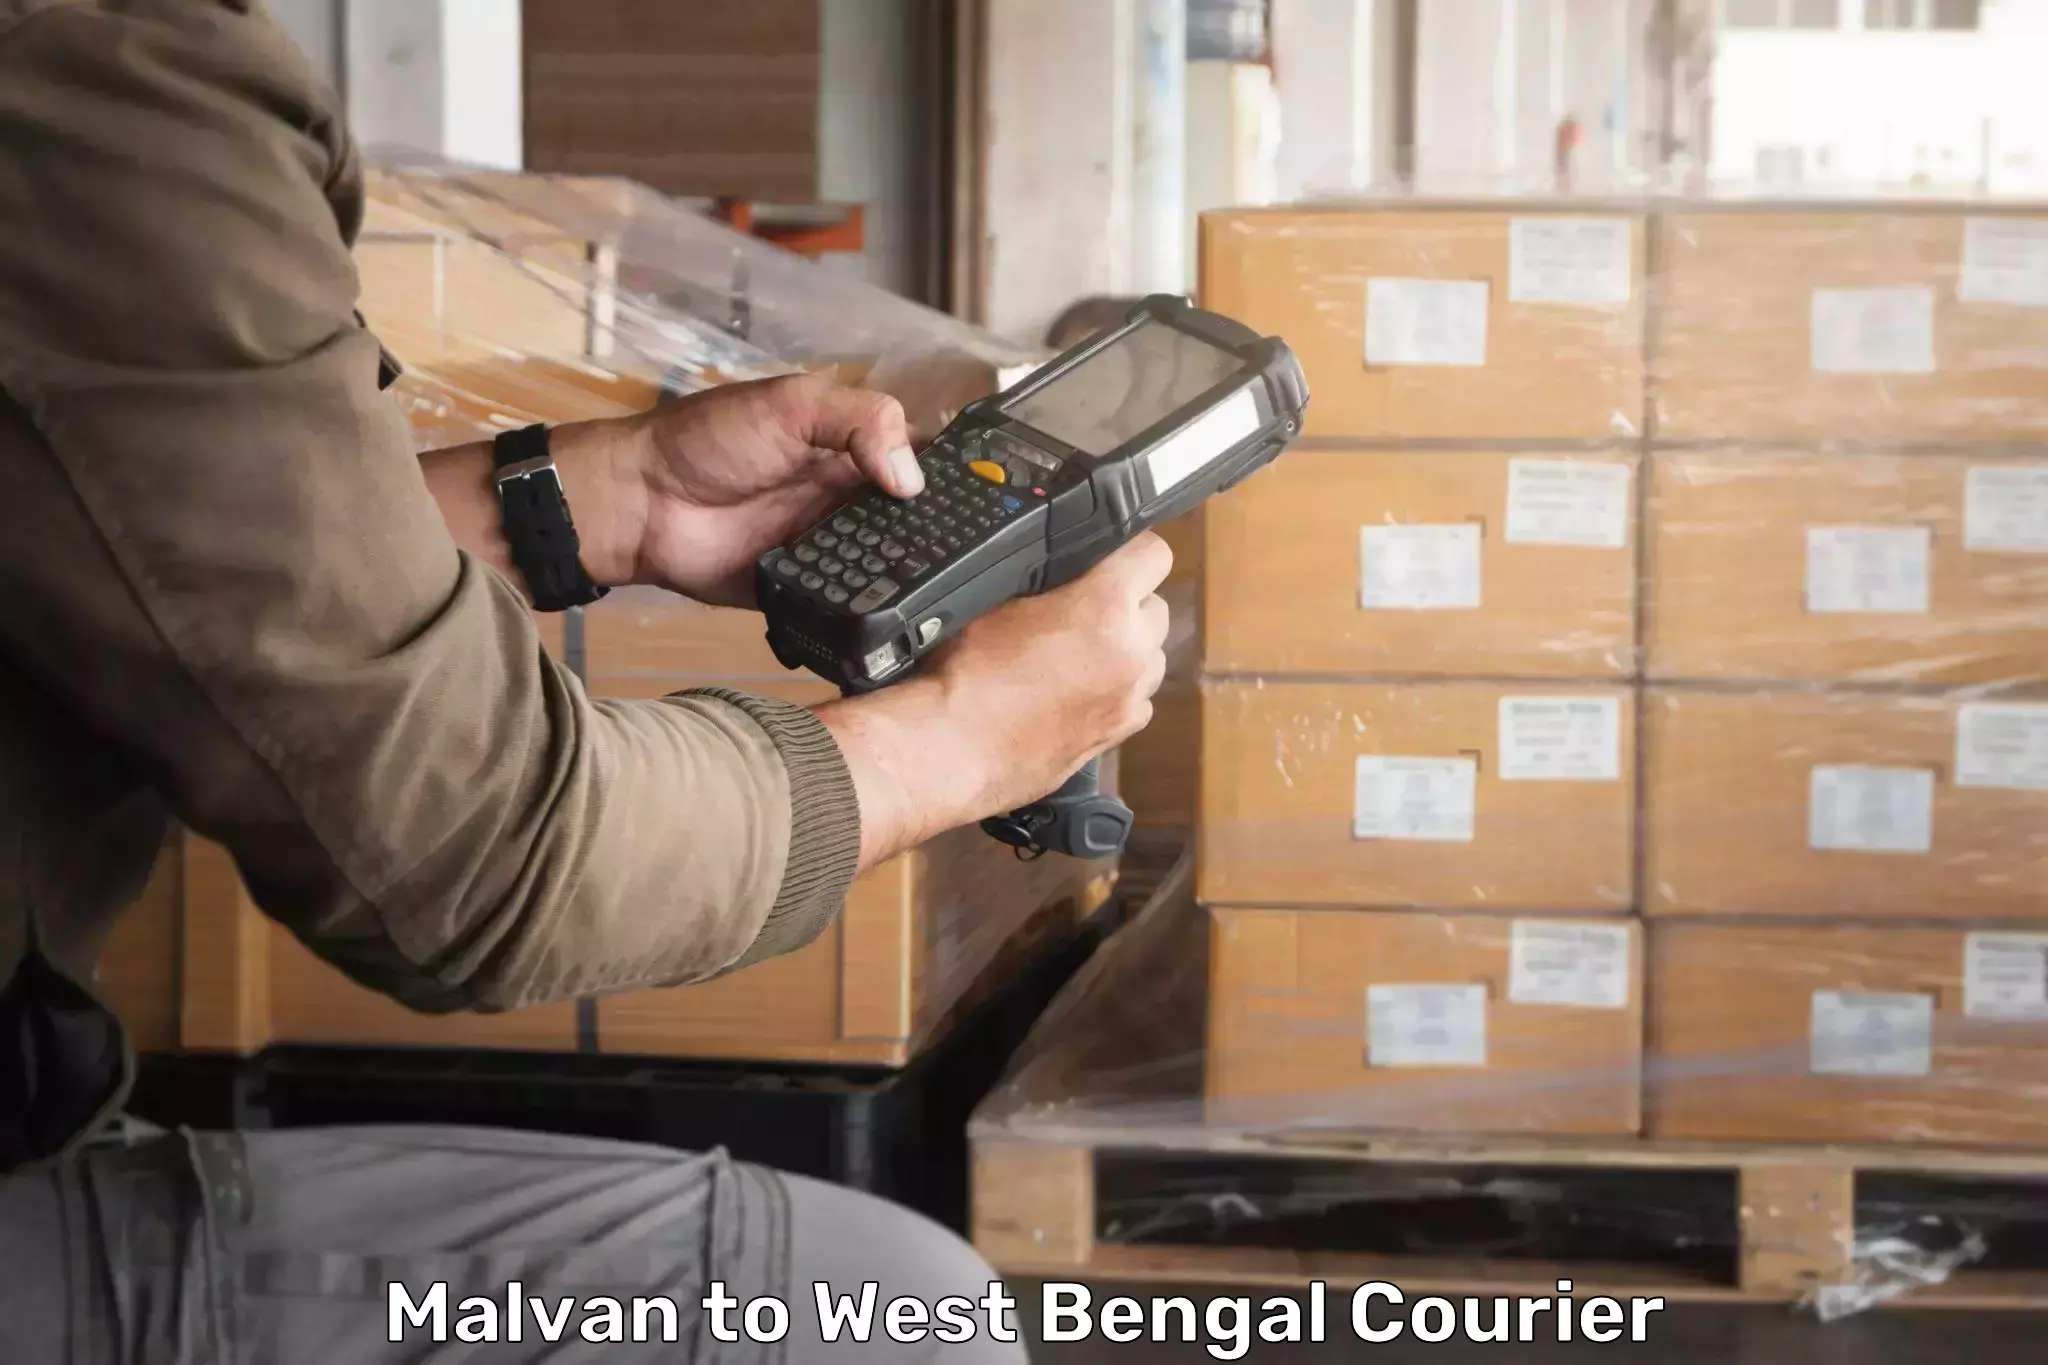 Remote area delivery in Malvan to Bhaddi